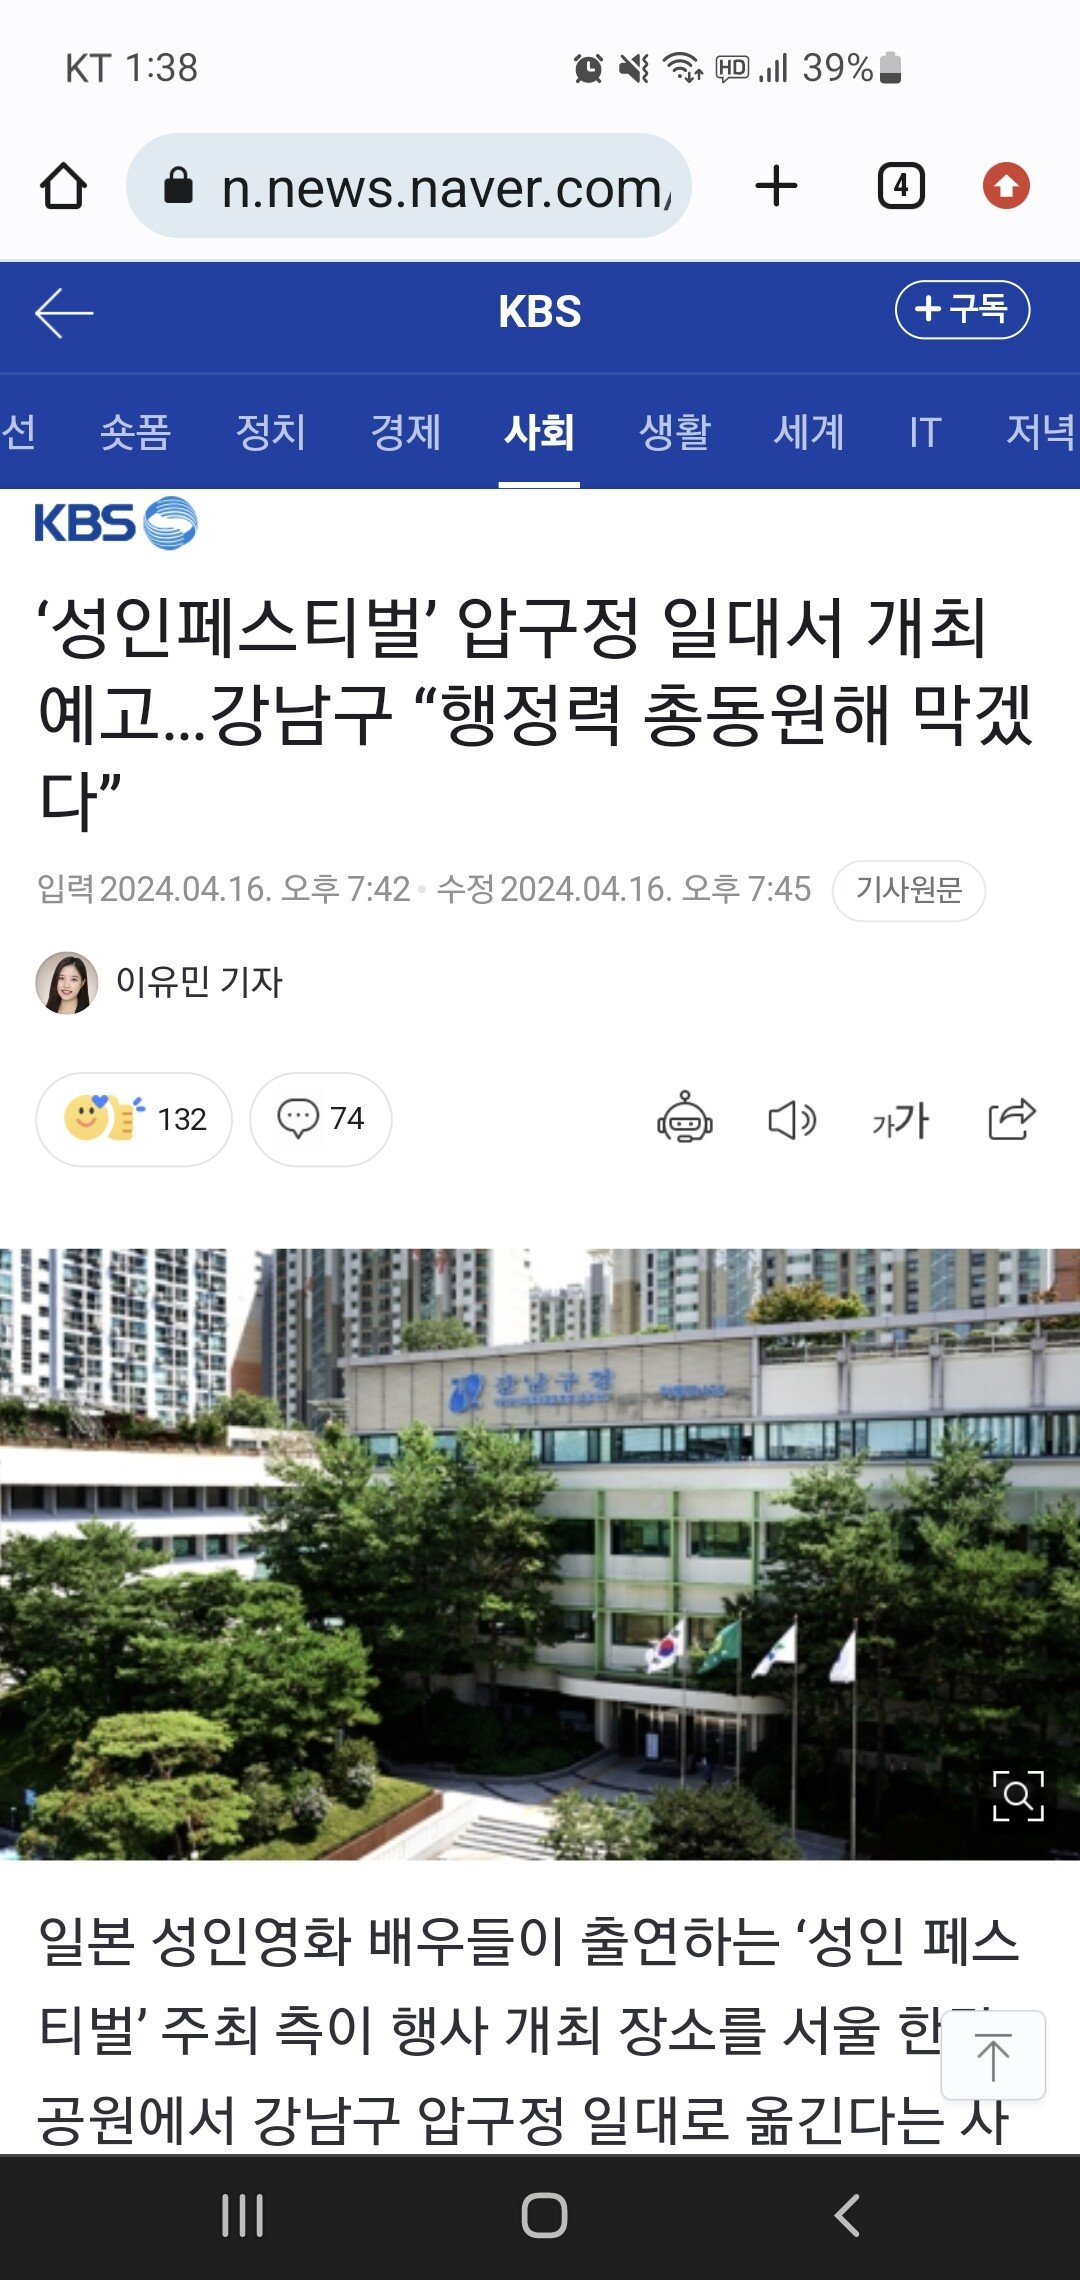 성인 페스티벌 금지하는 강남구청장이 논란인 이유